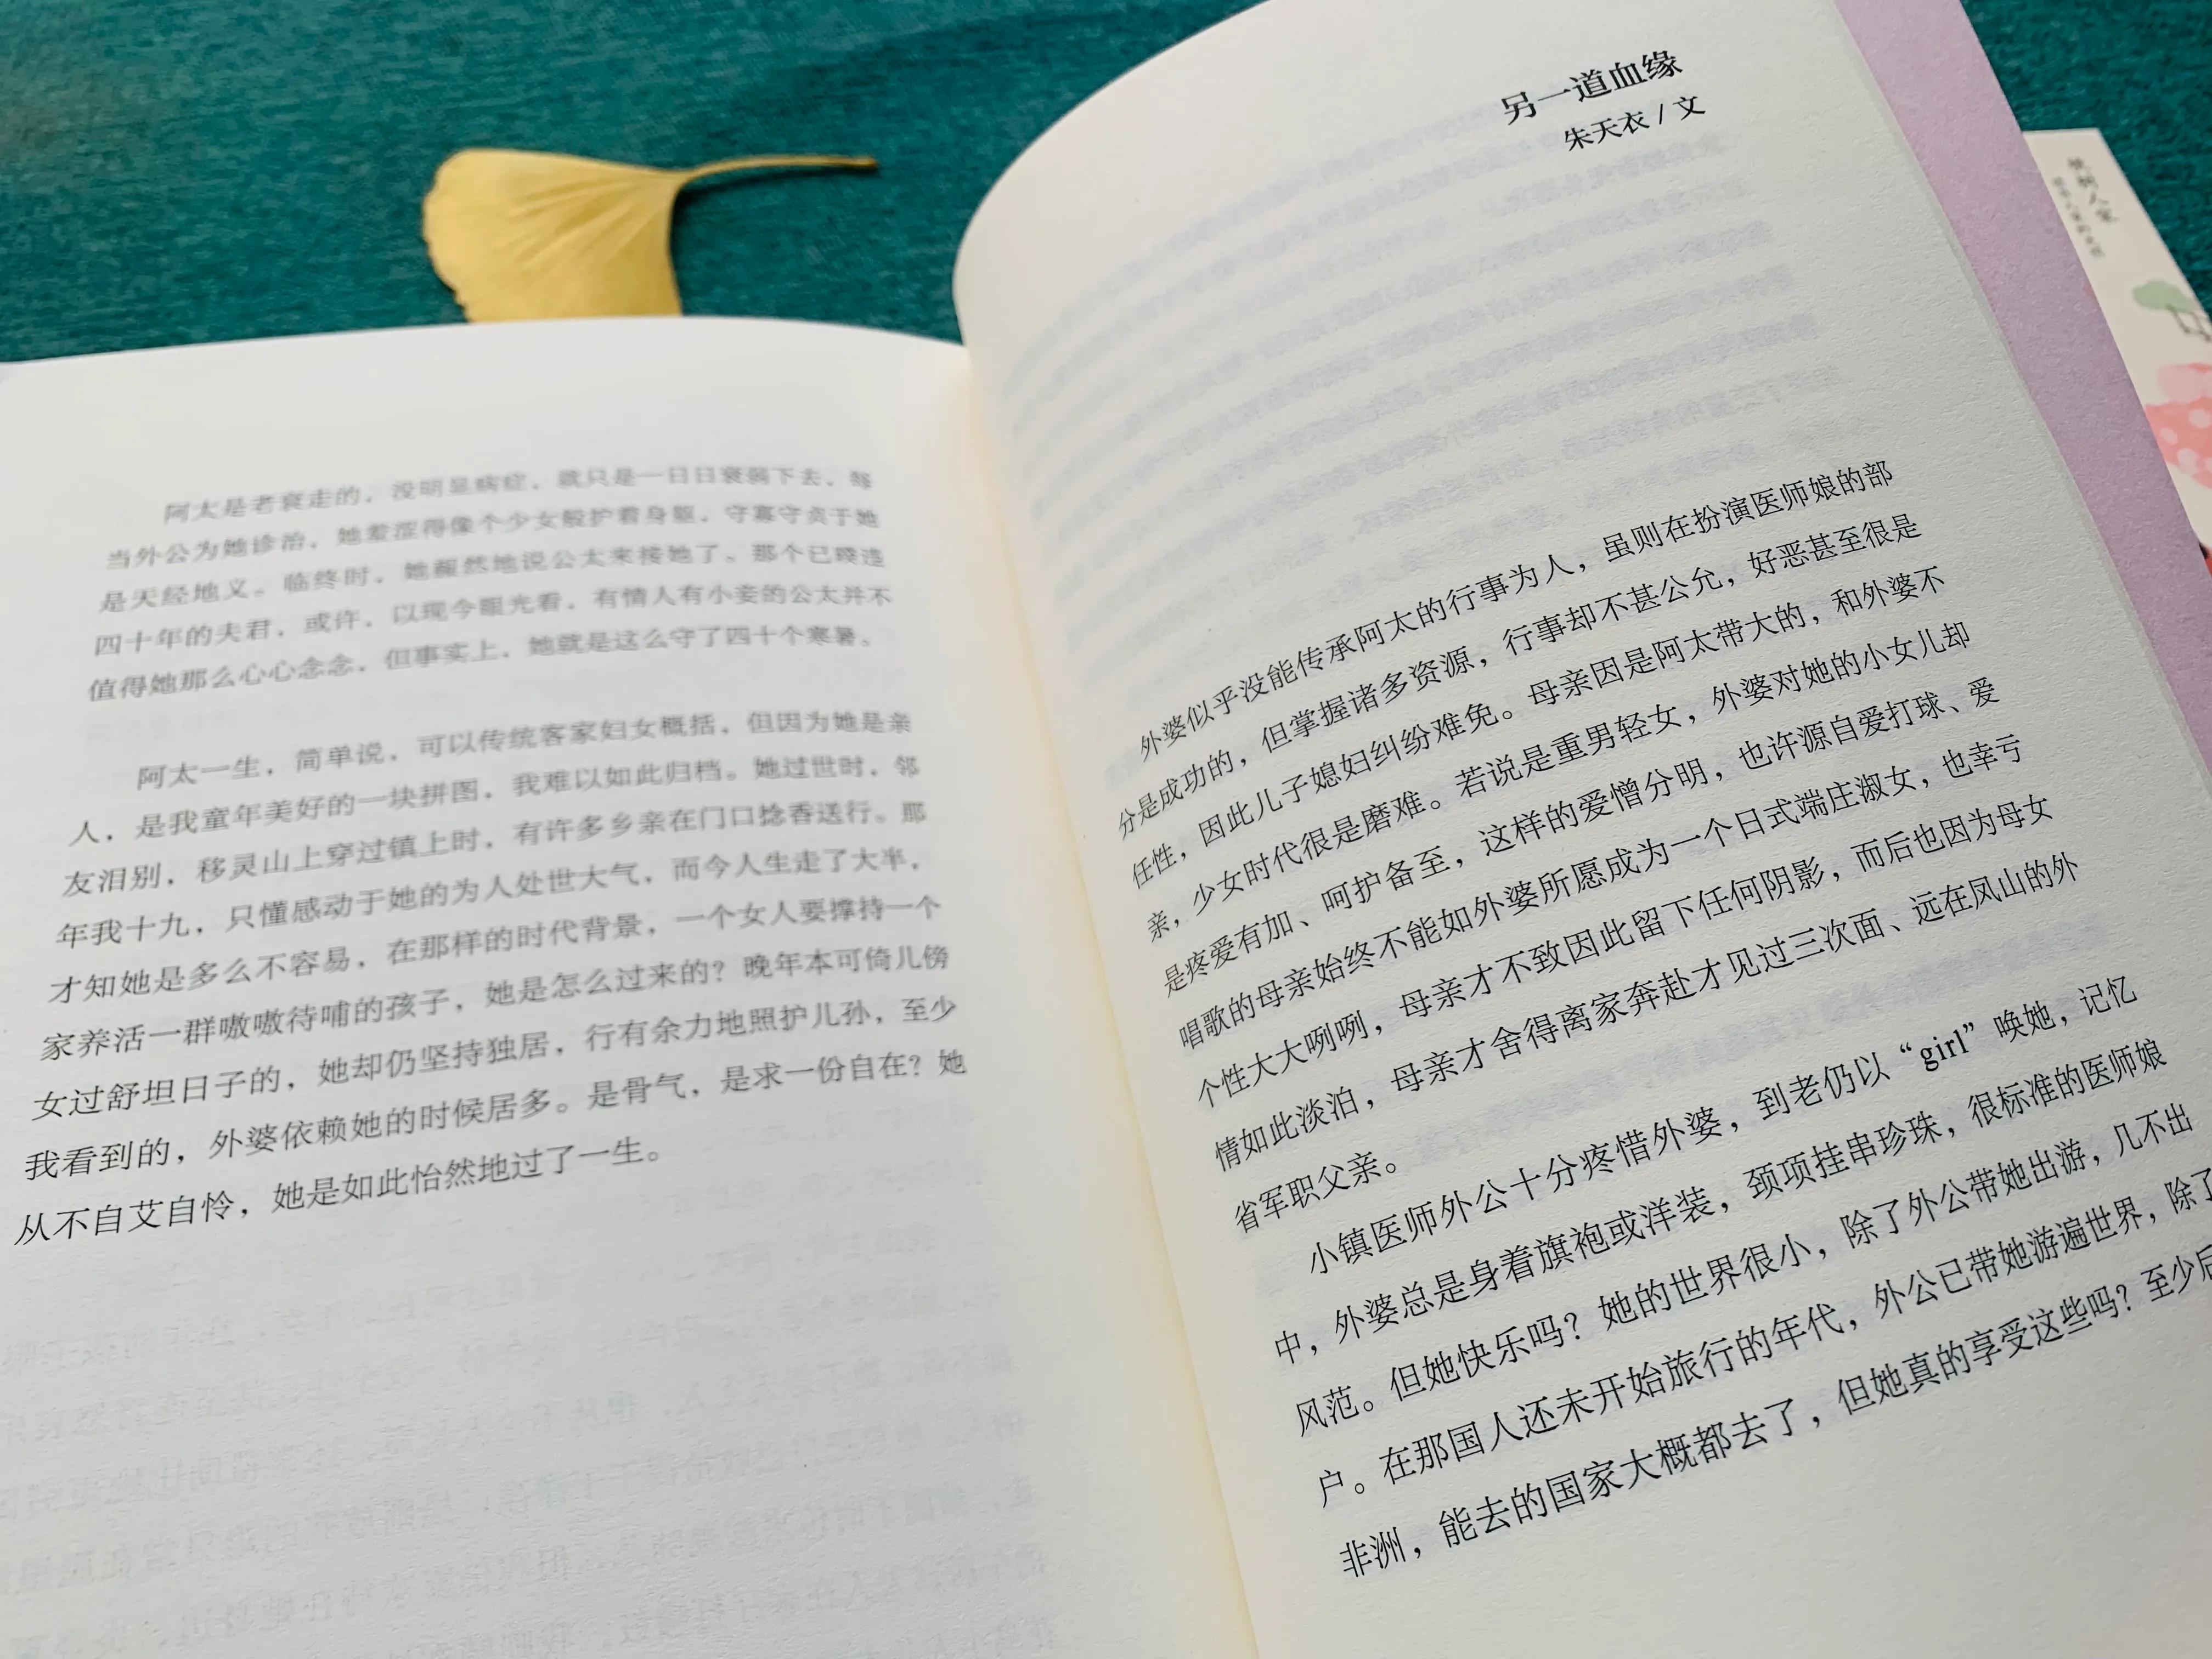 温暖的冬日午后，读台湾文坛三姐妹温暖的治愈散文，真美好